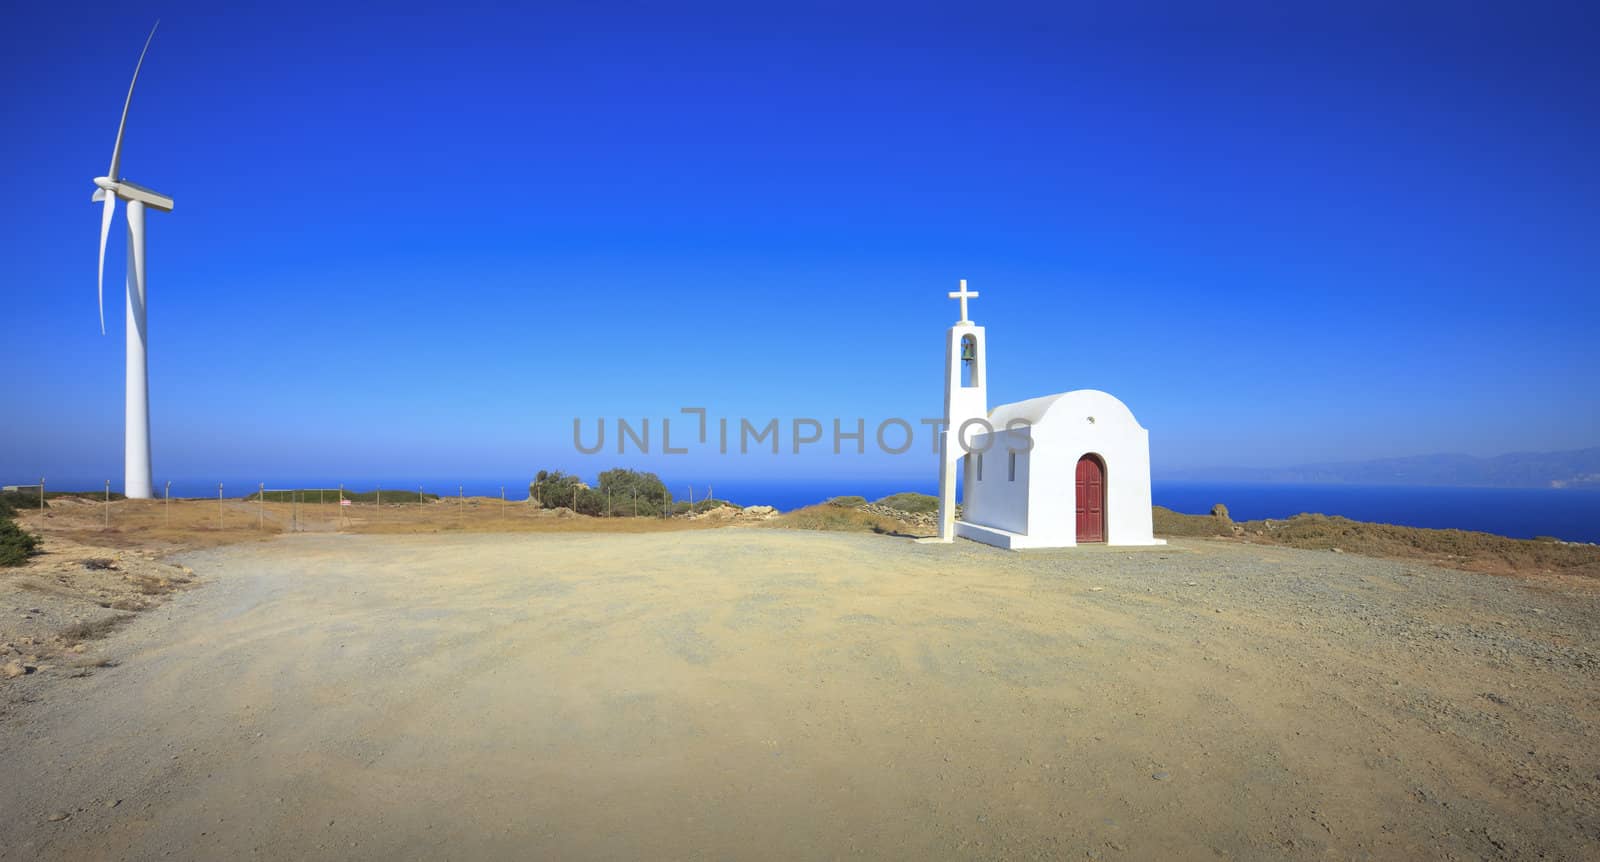 Mountain landscape. Chapel.Windmill. Crete. Greece.